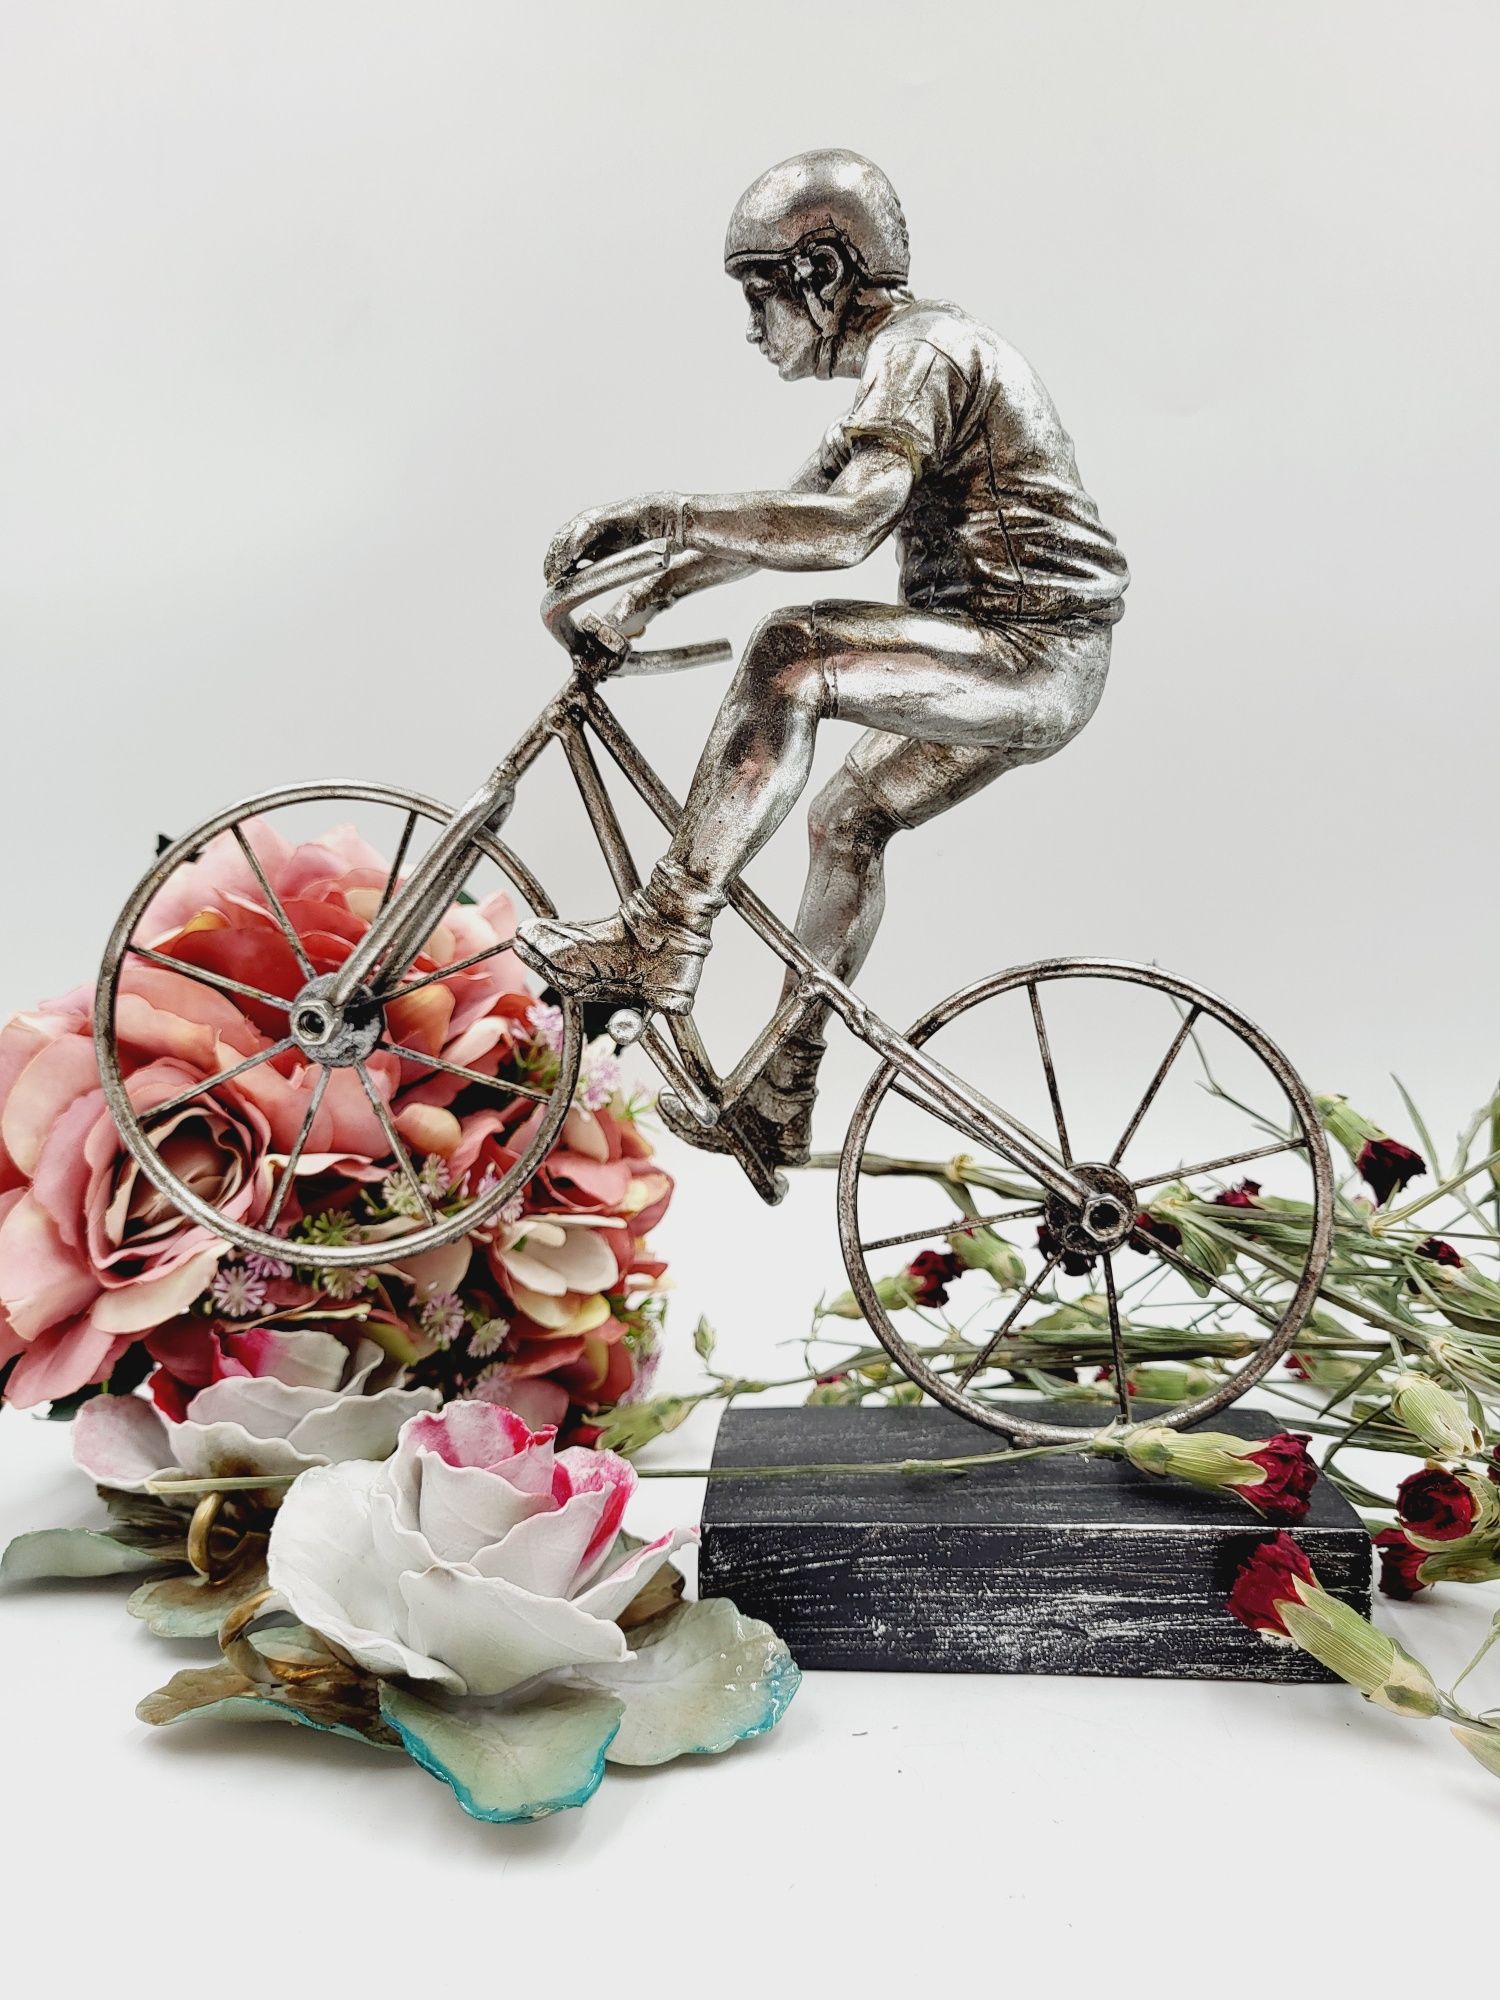 Wysoka kolekcjonerska figurka rowerzysty